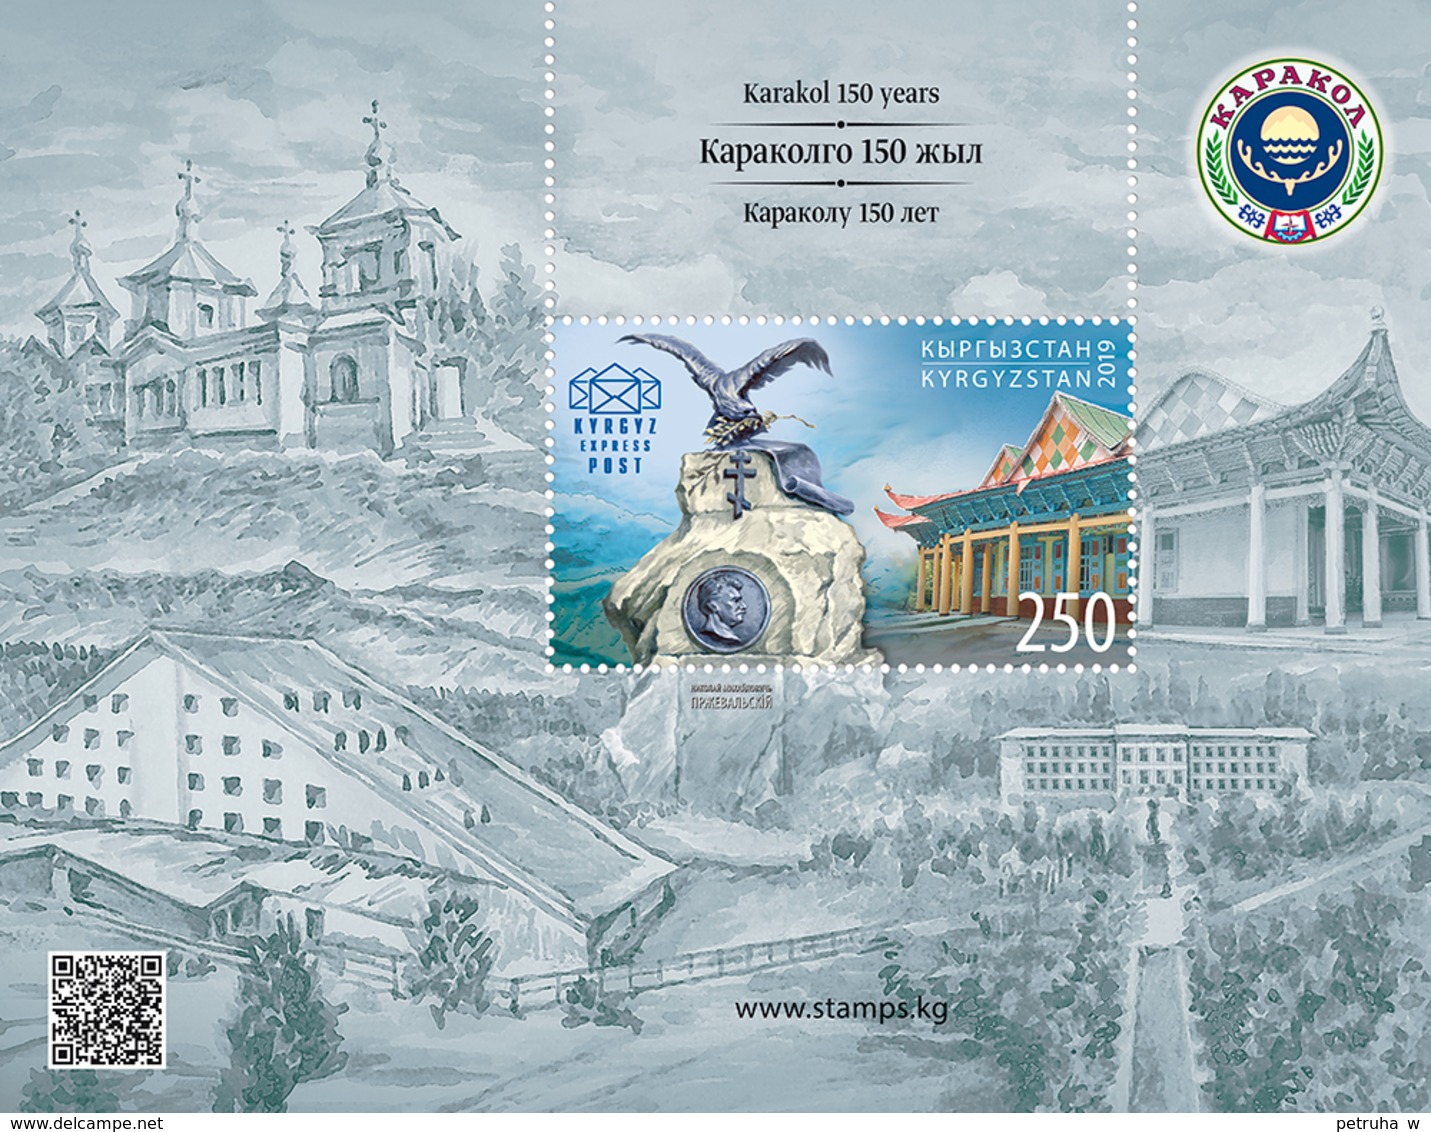 Kyrgyzstan 2019. Karakol City - 150th Anniversary. Blok - Kyrgyzstan